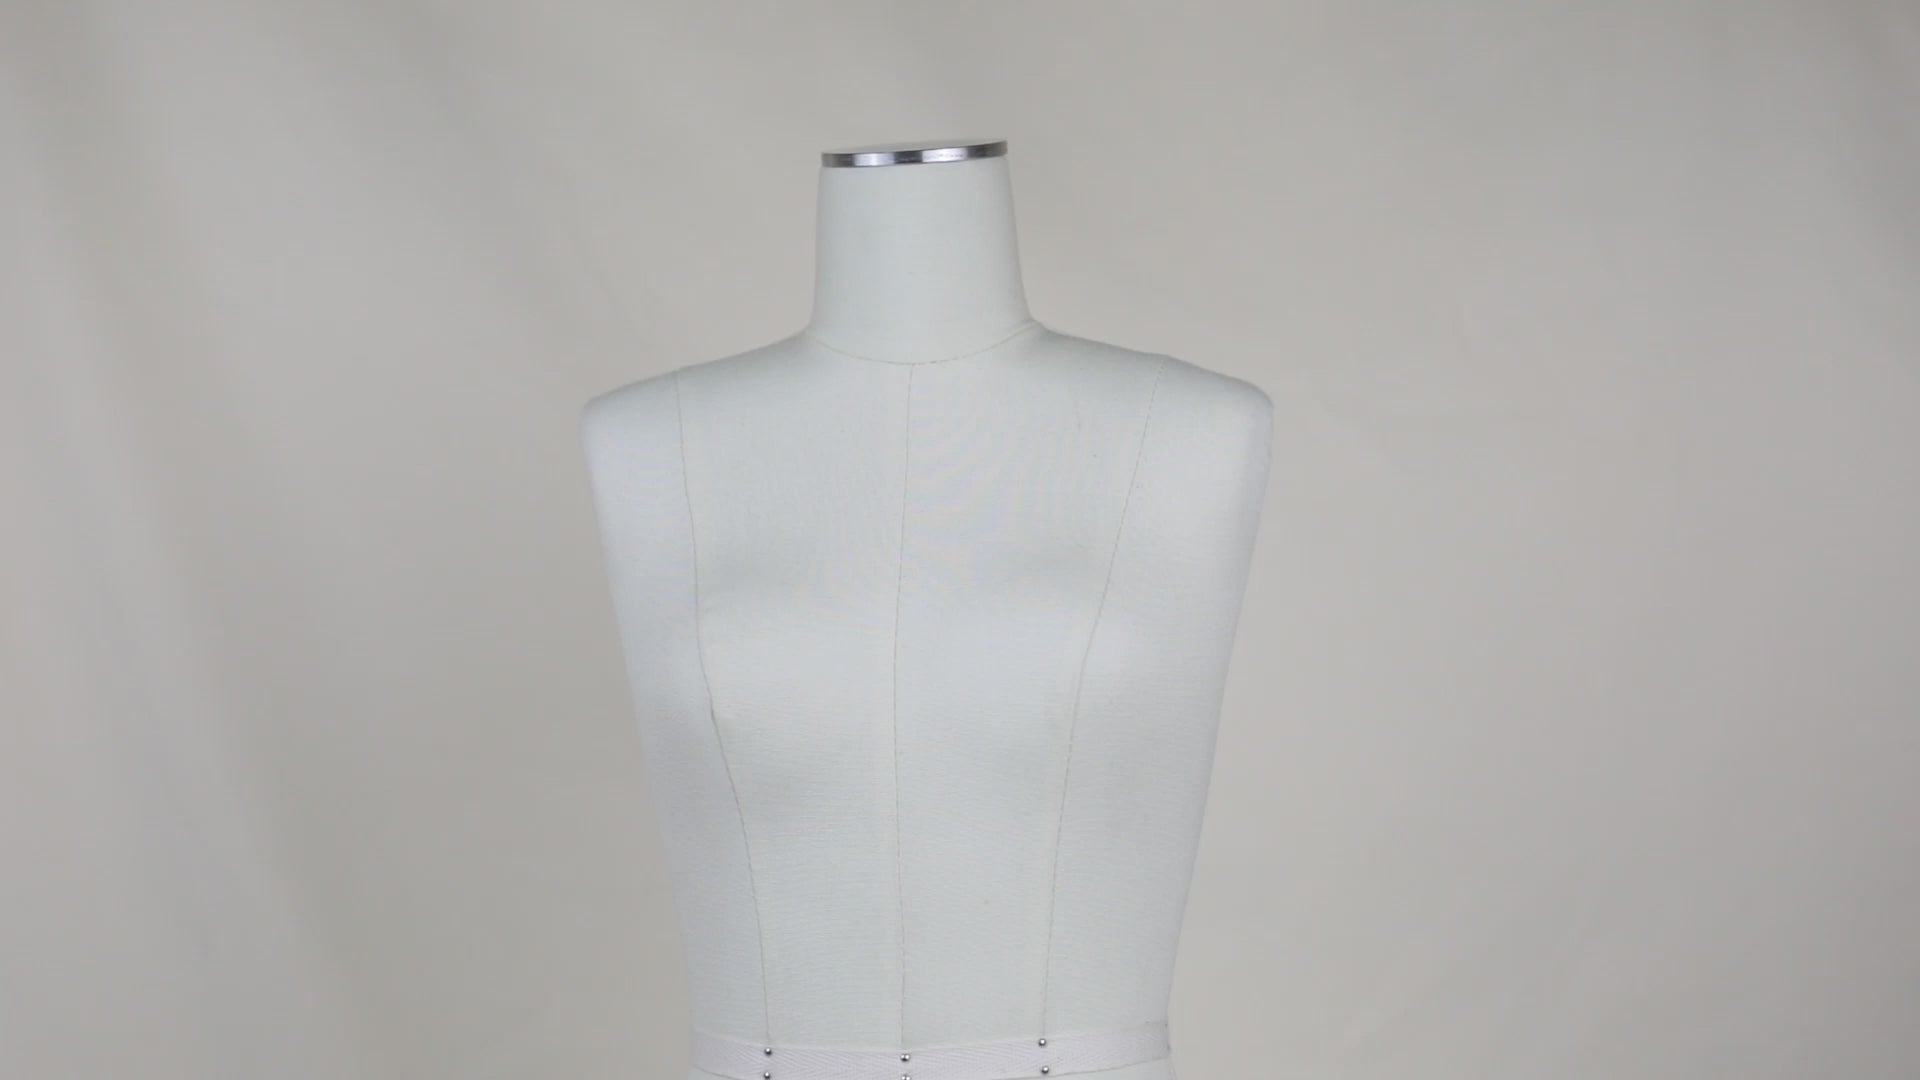 DE-LIANG Female Half Scale Dress Form Mannequin,Plus Size 16